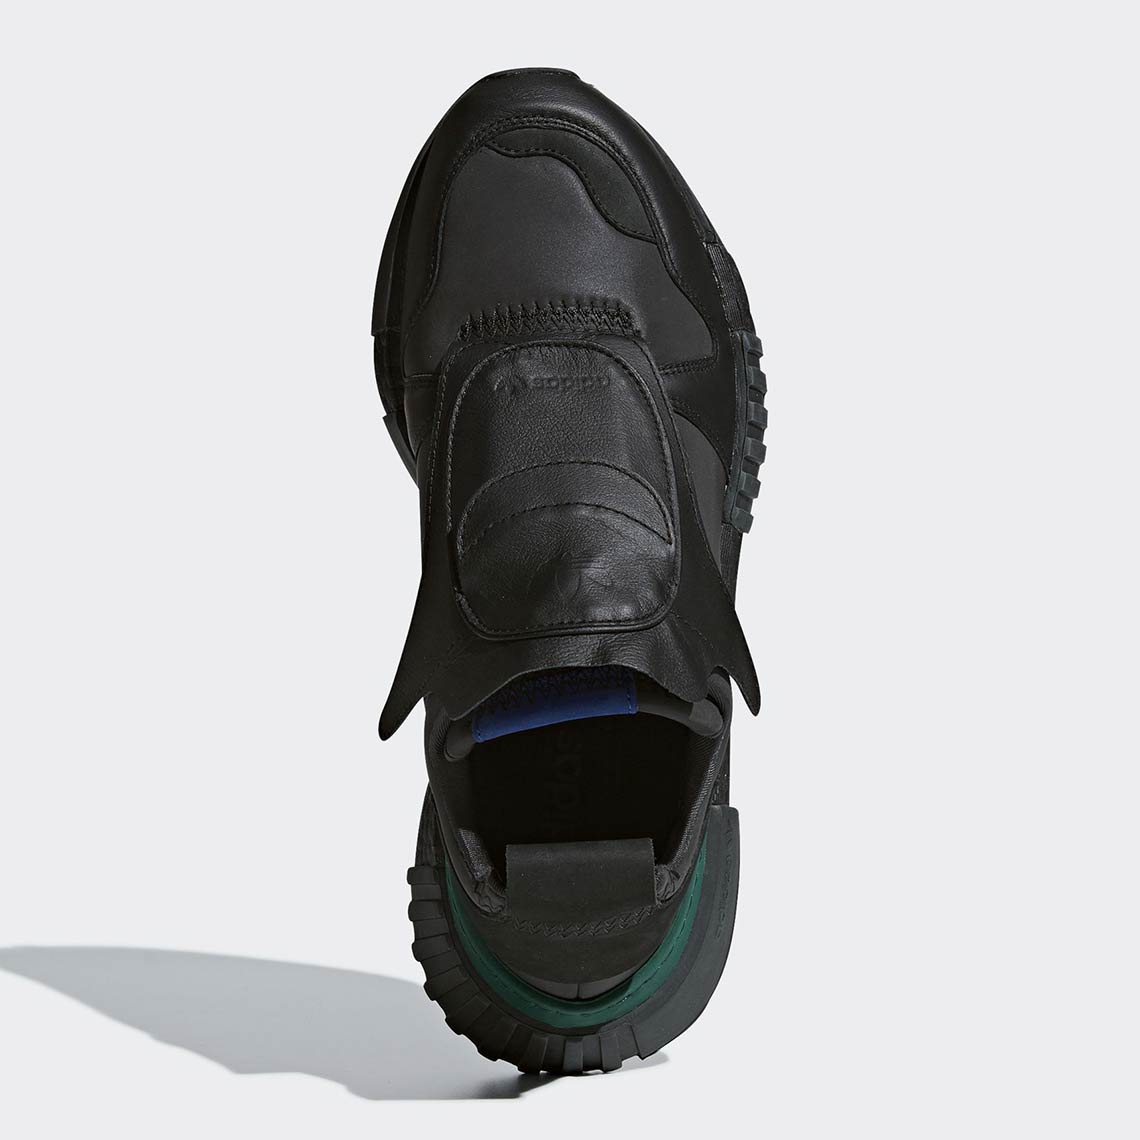 adidas futurepacer black